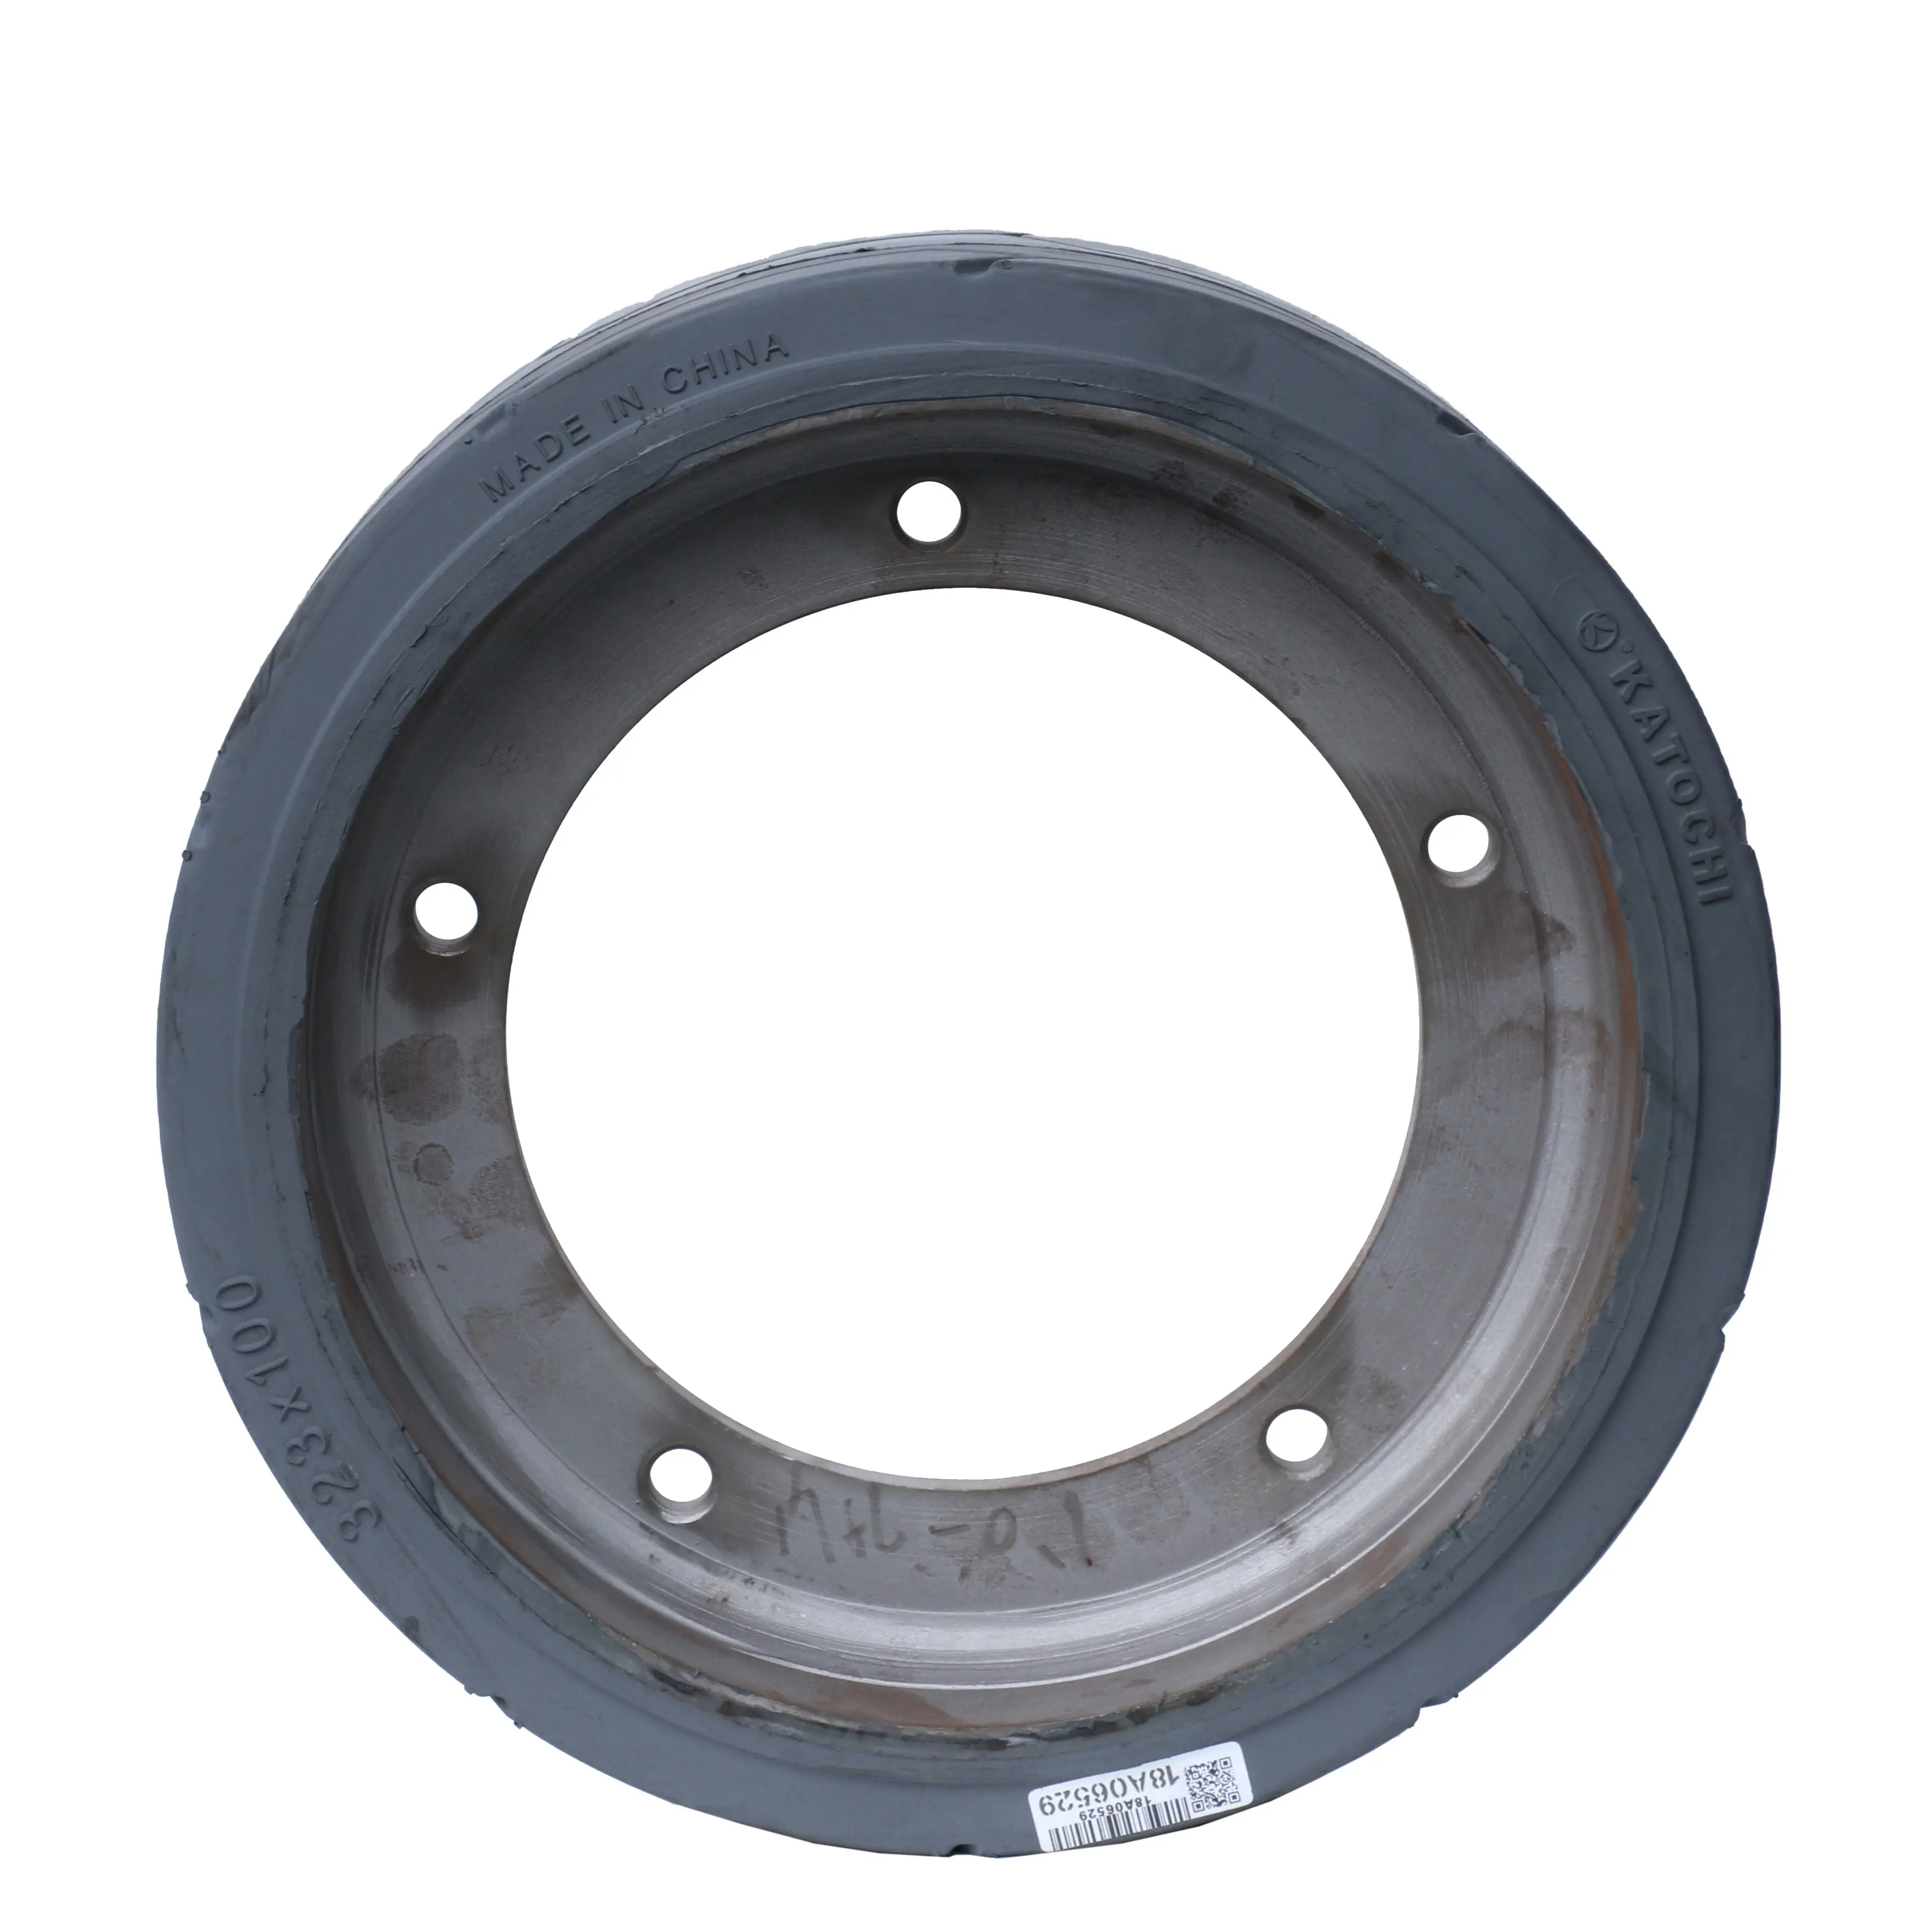 Venda quente com ou sem molde de freio em pneus sólidos para elevadores JLG Vertical Haulotte 323X100